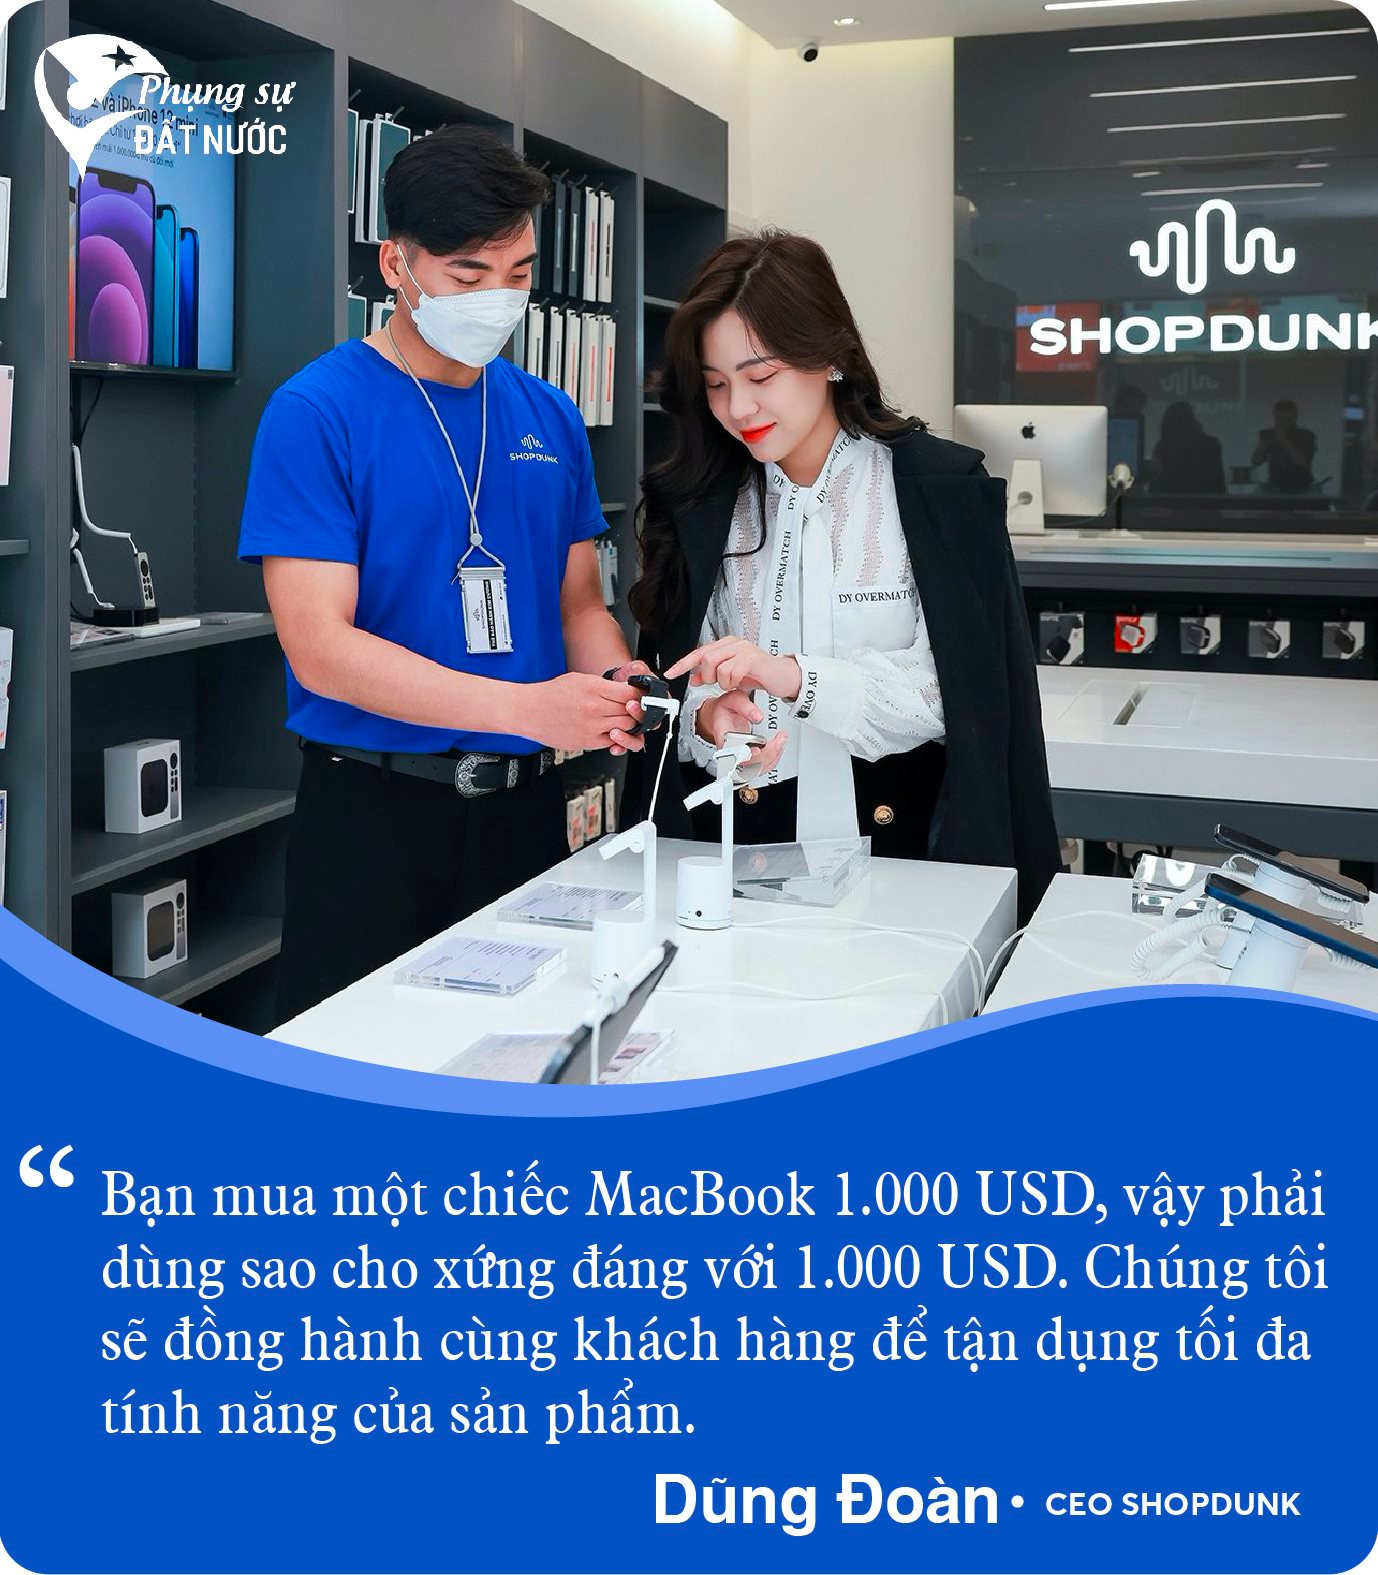 CEO ShopDunk Dũng Đoàn: Người Việt yêu Apple nhưng chưa được hồi đáp xứng đáng - Ảnh 8.